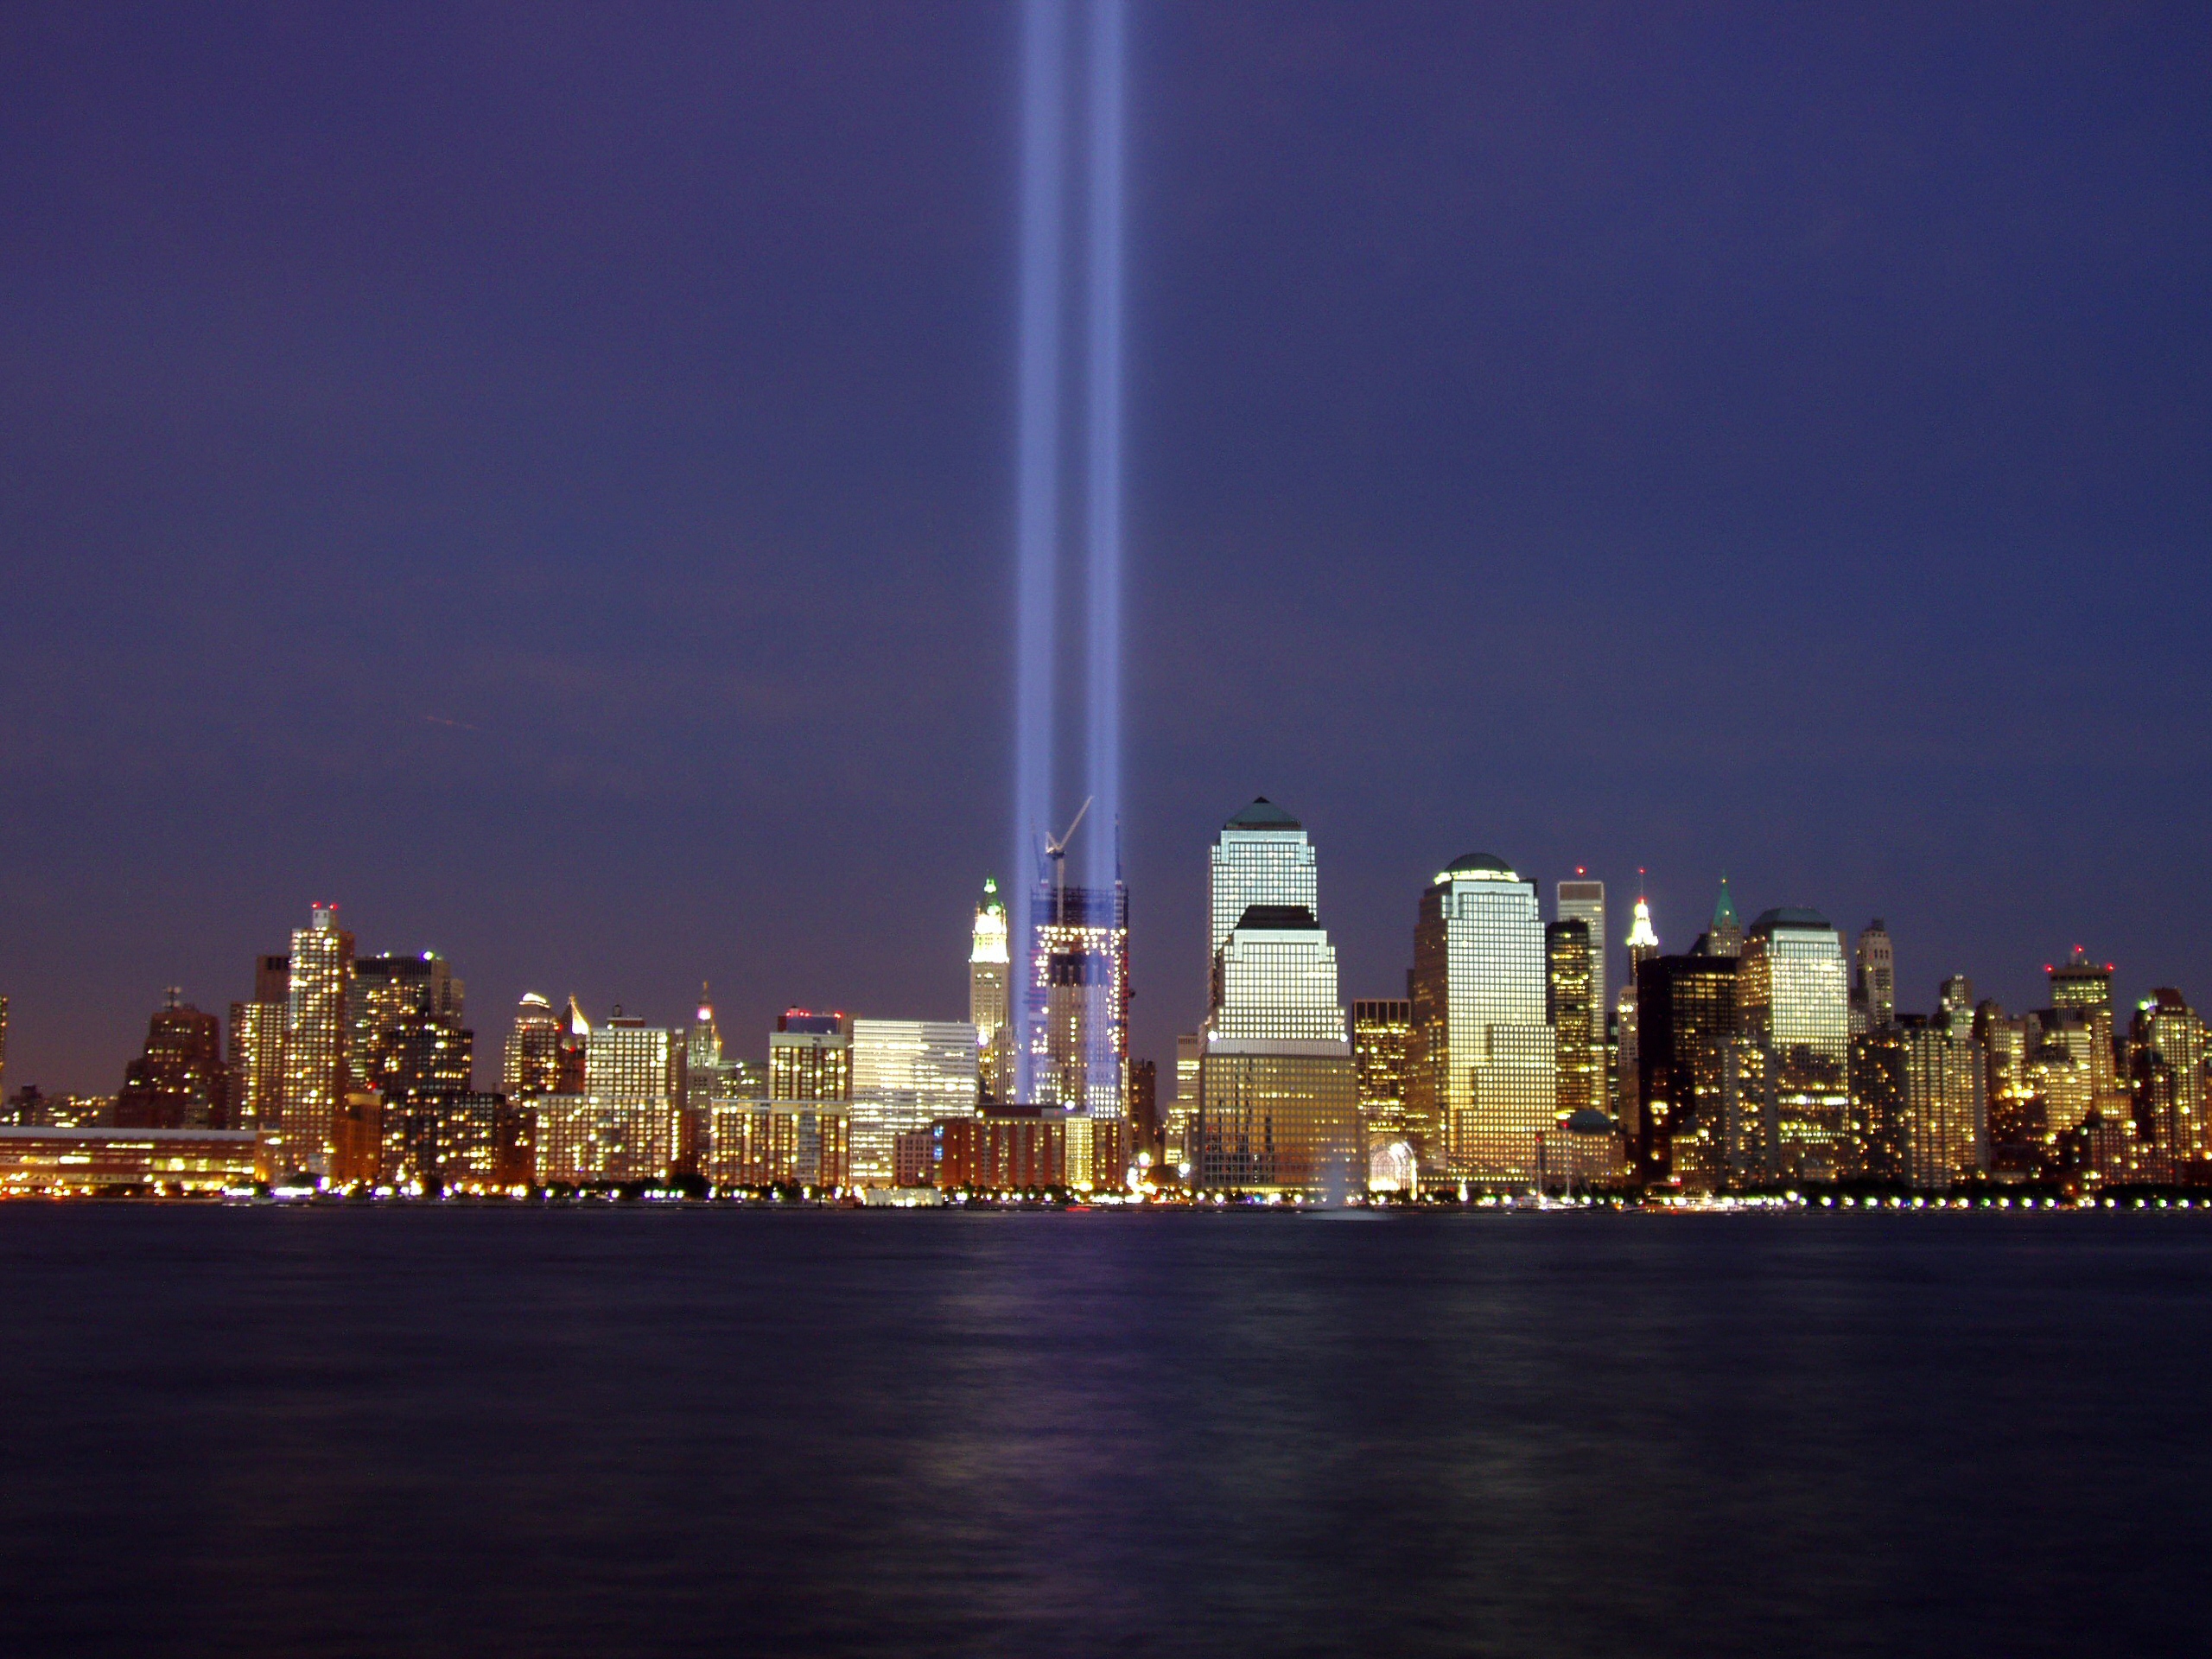 The WTC Memorial